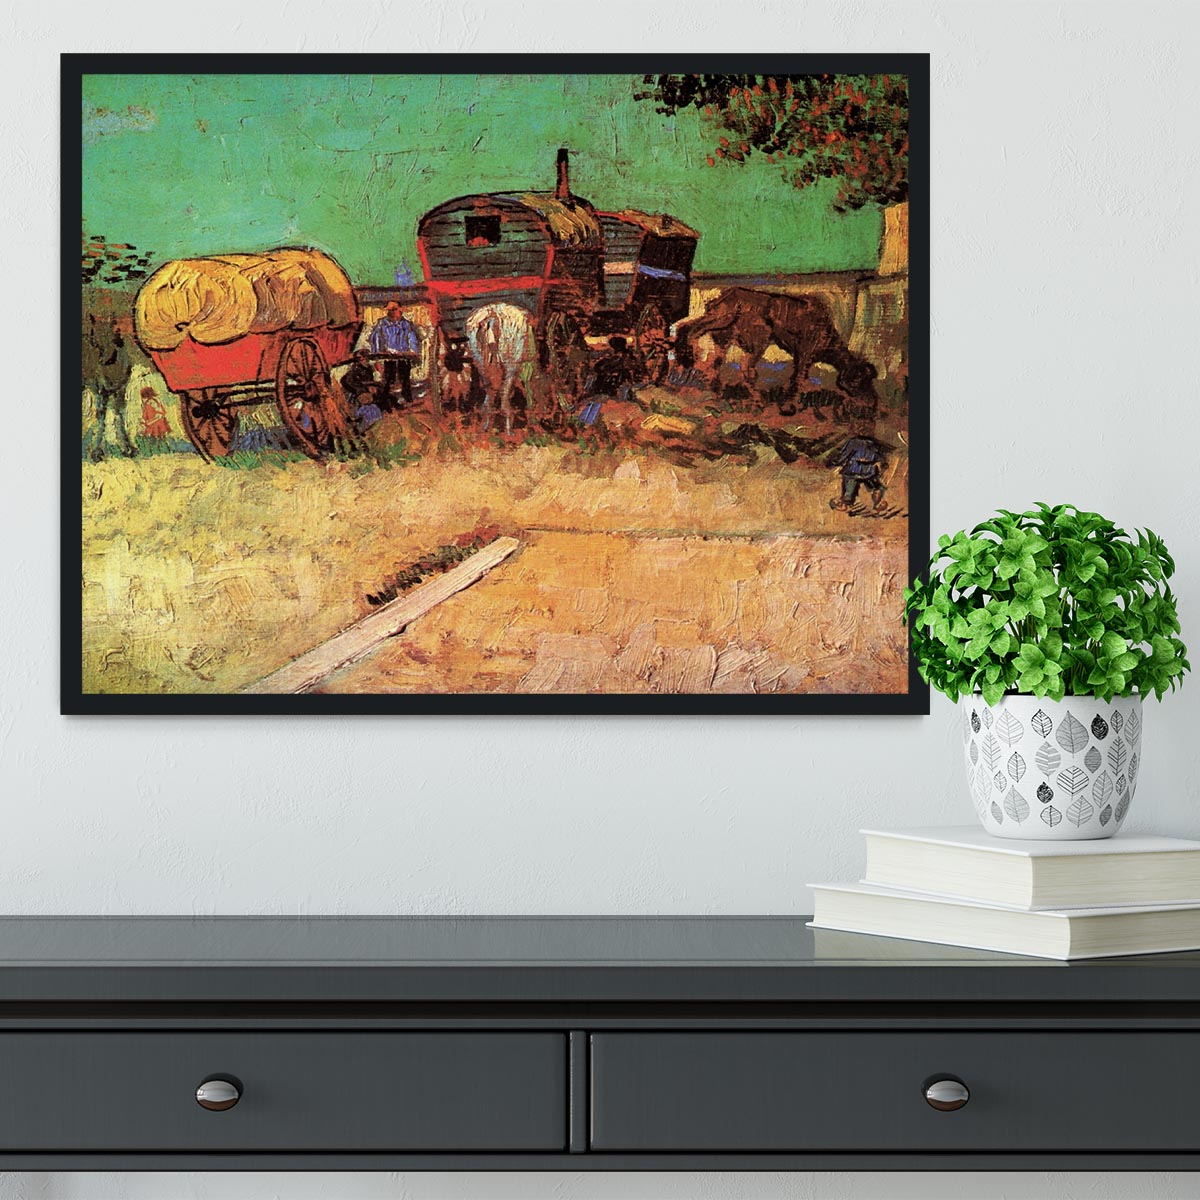 Encampment of Gypsies with Caravans by Van Gogh Framed Print - Canvas Art Rocks - 2